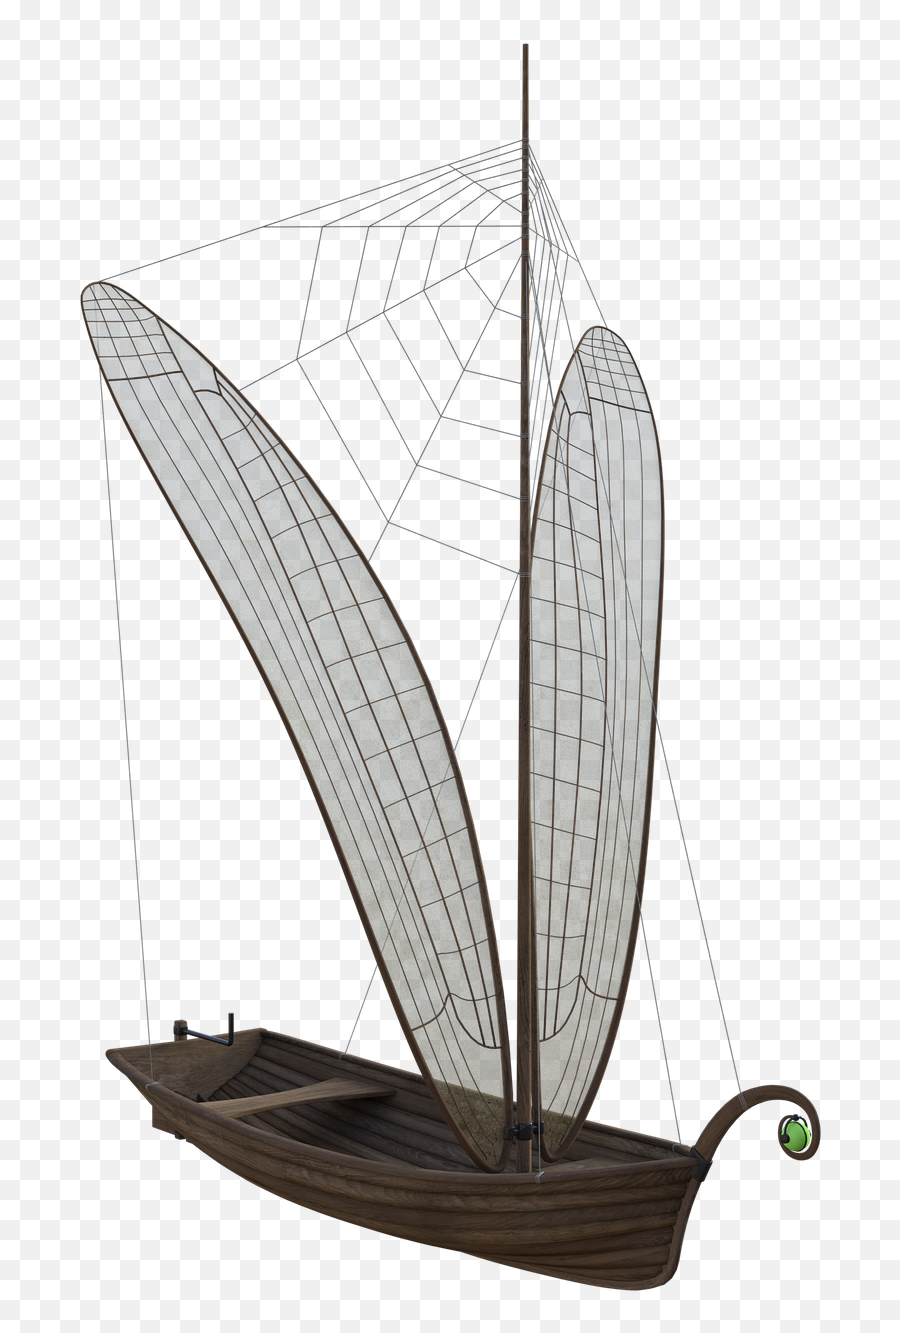 Dragonfly Boat Wings - Free Image On Pixabay Sail Png,Cobwebs Png